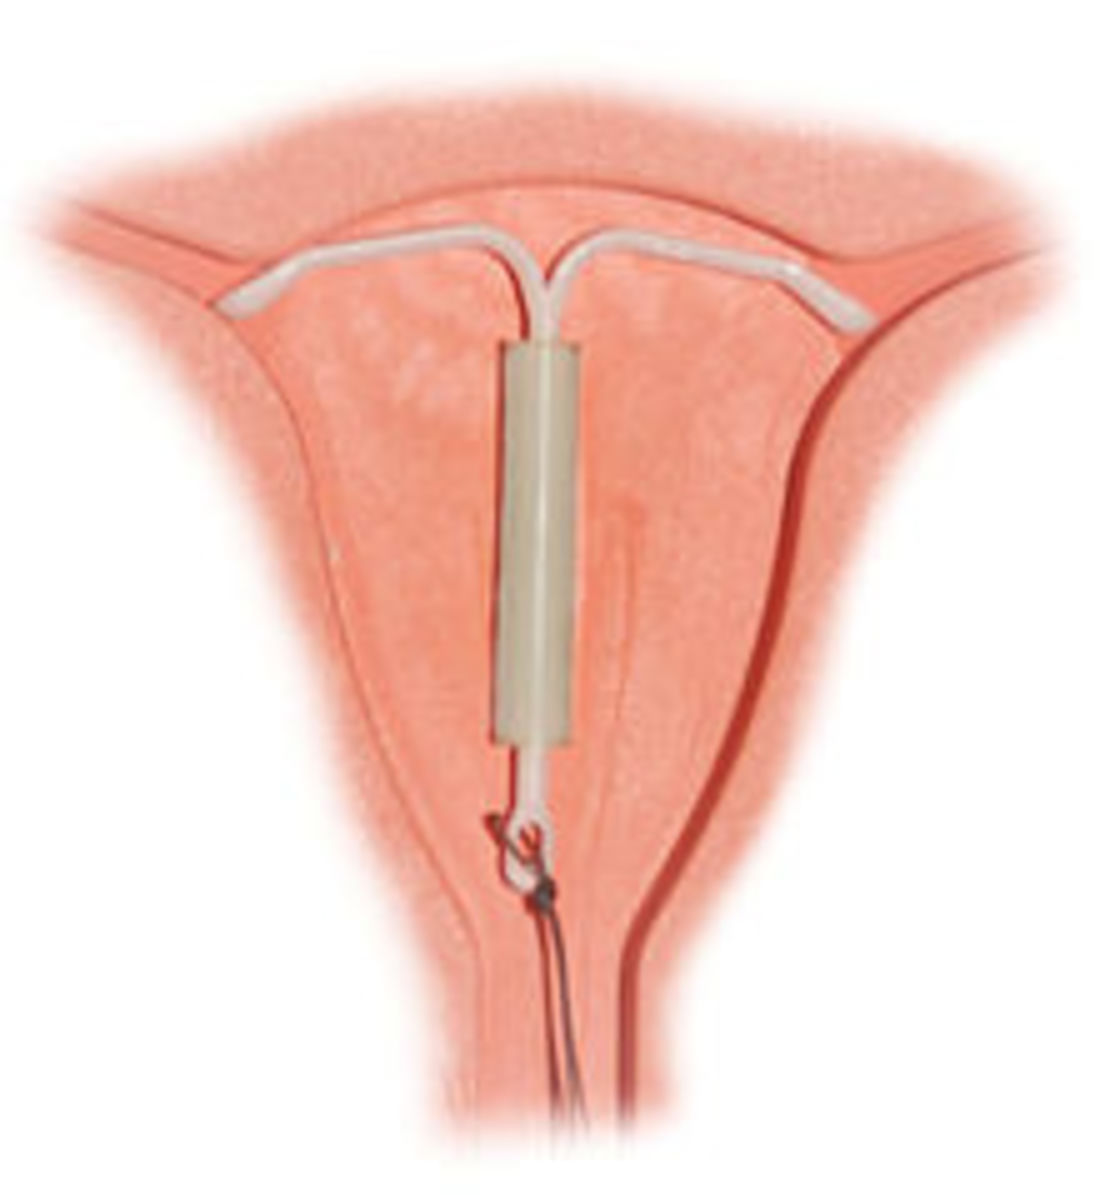 Hormonal IUD 